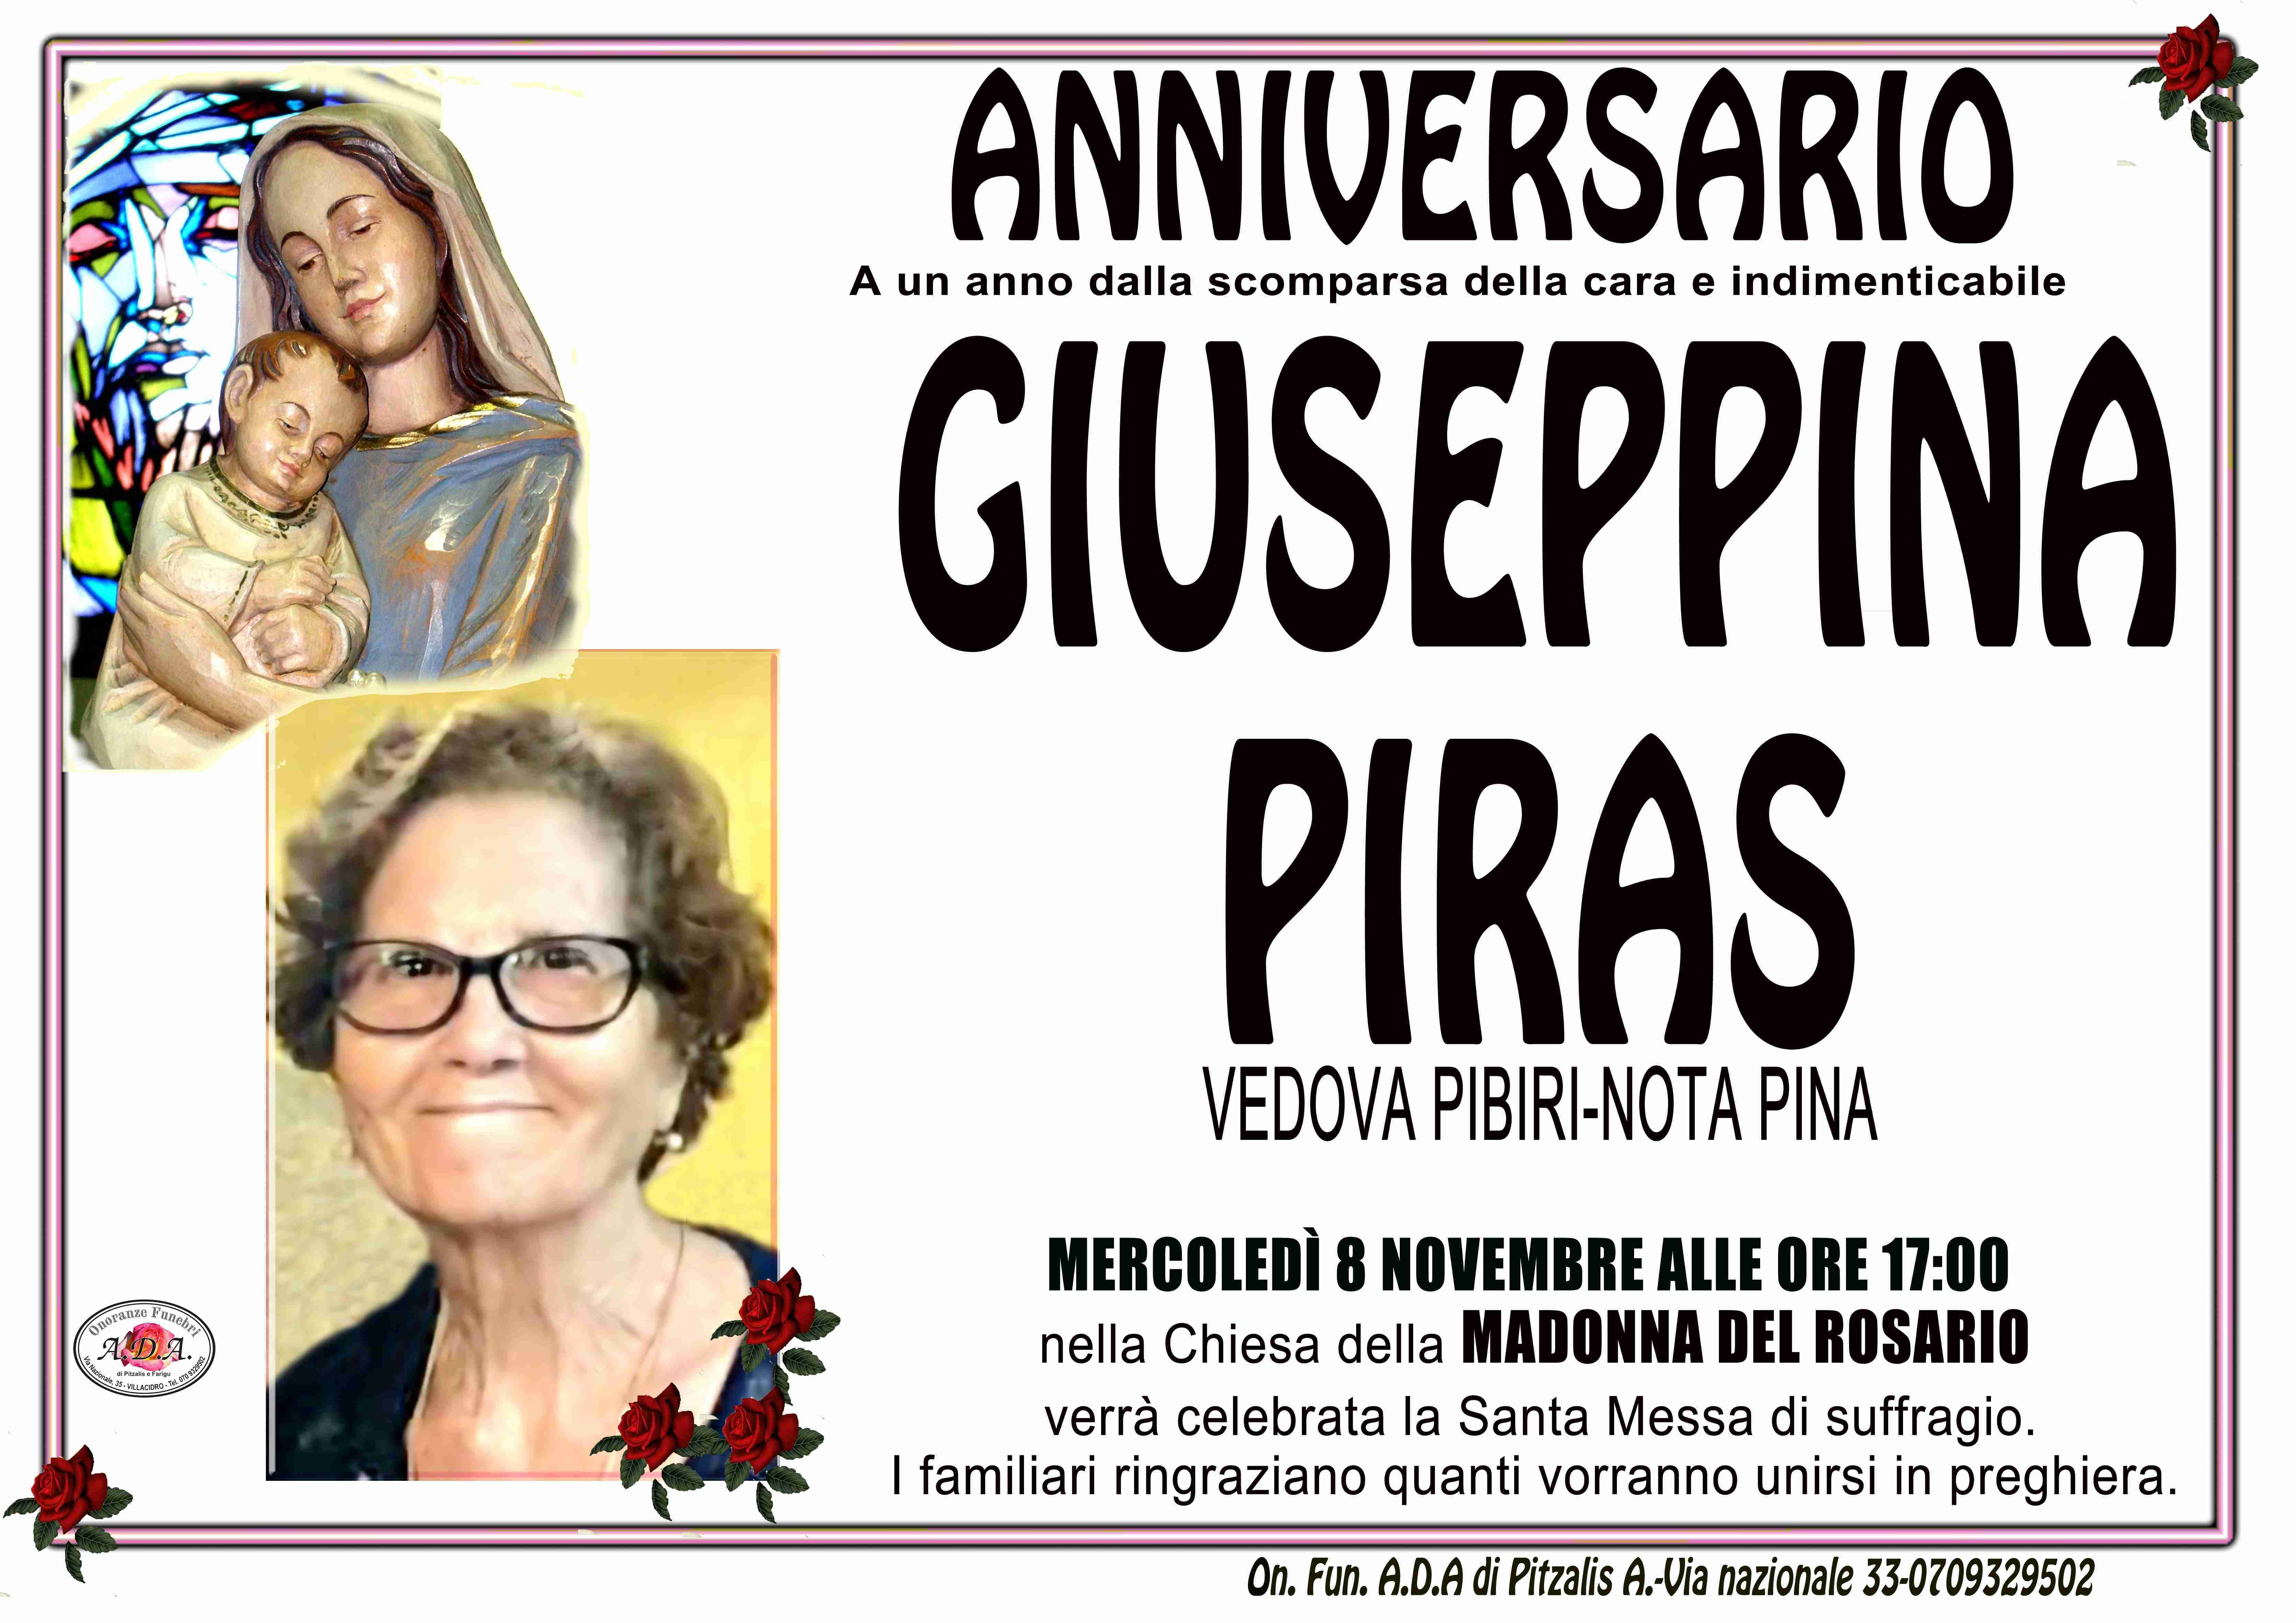 Giuseppina Piras